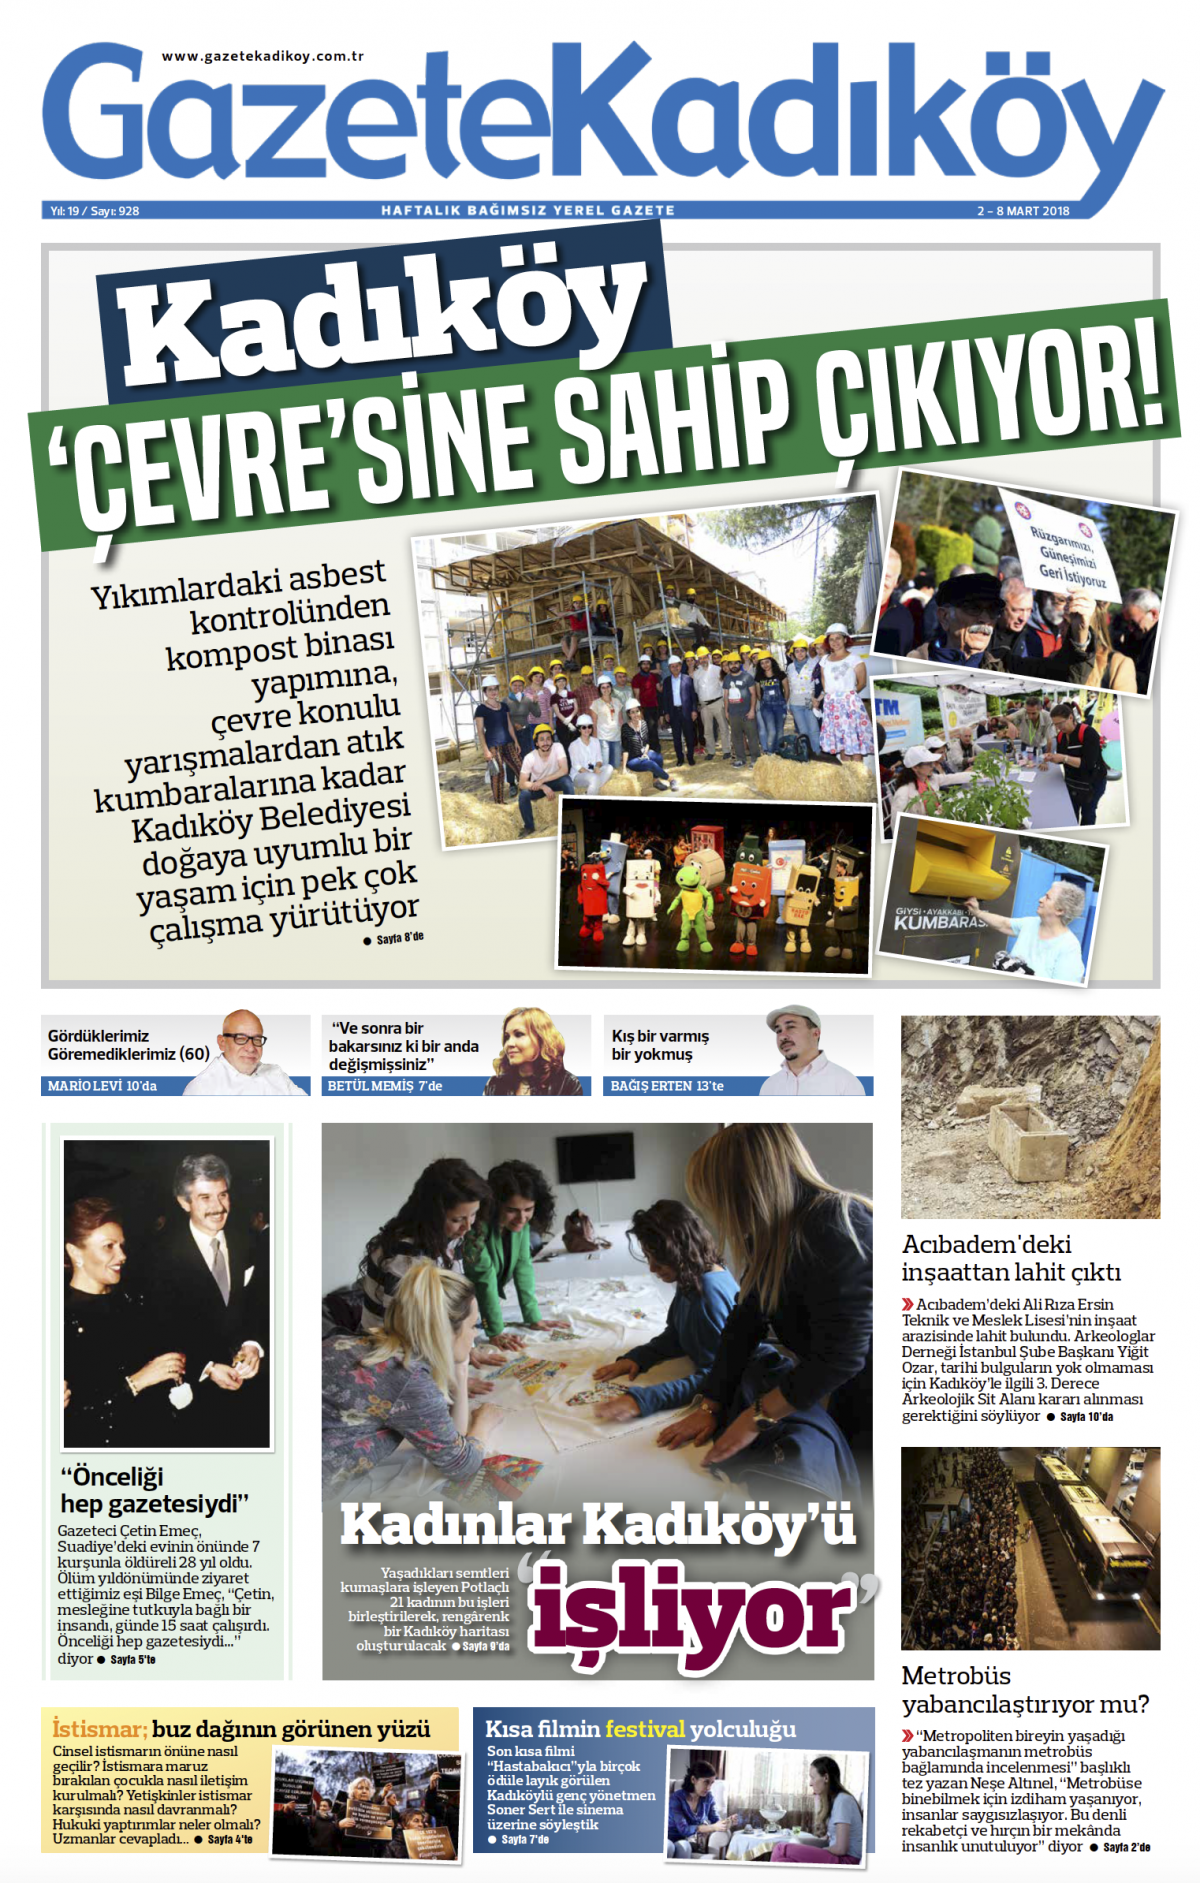 Gazete Kadıköy - 928. SAYI